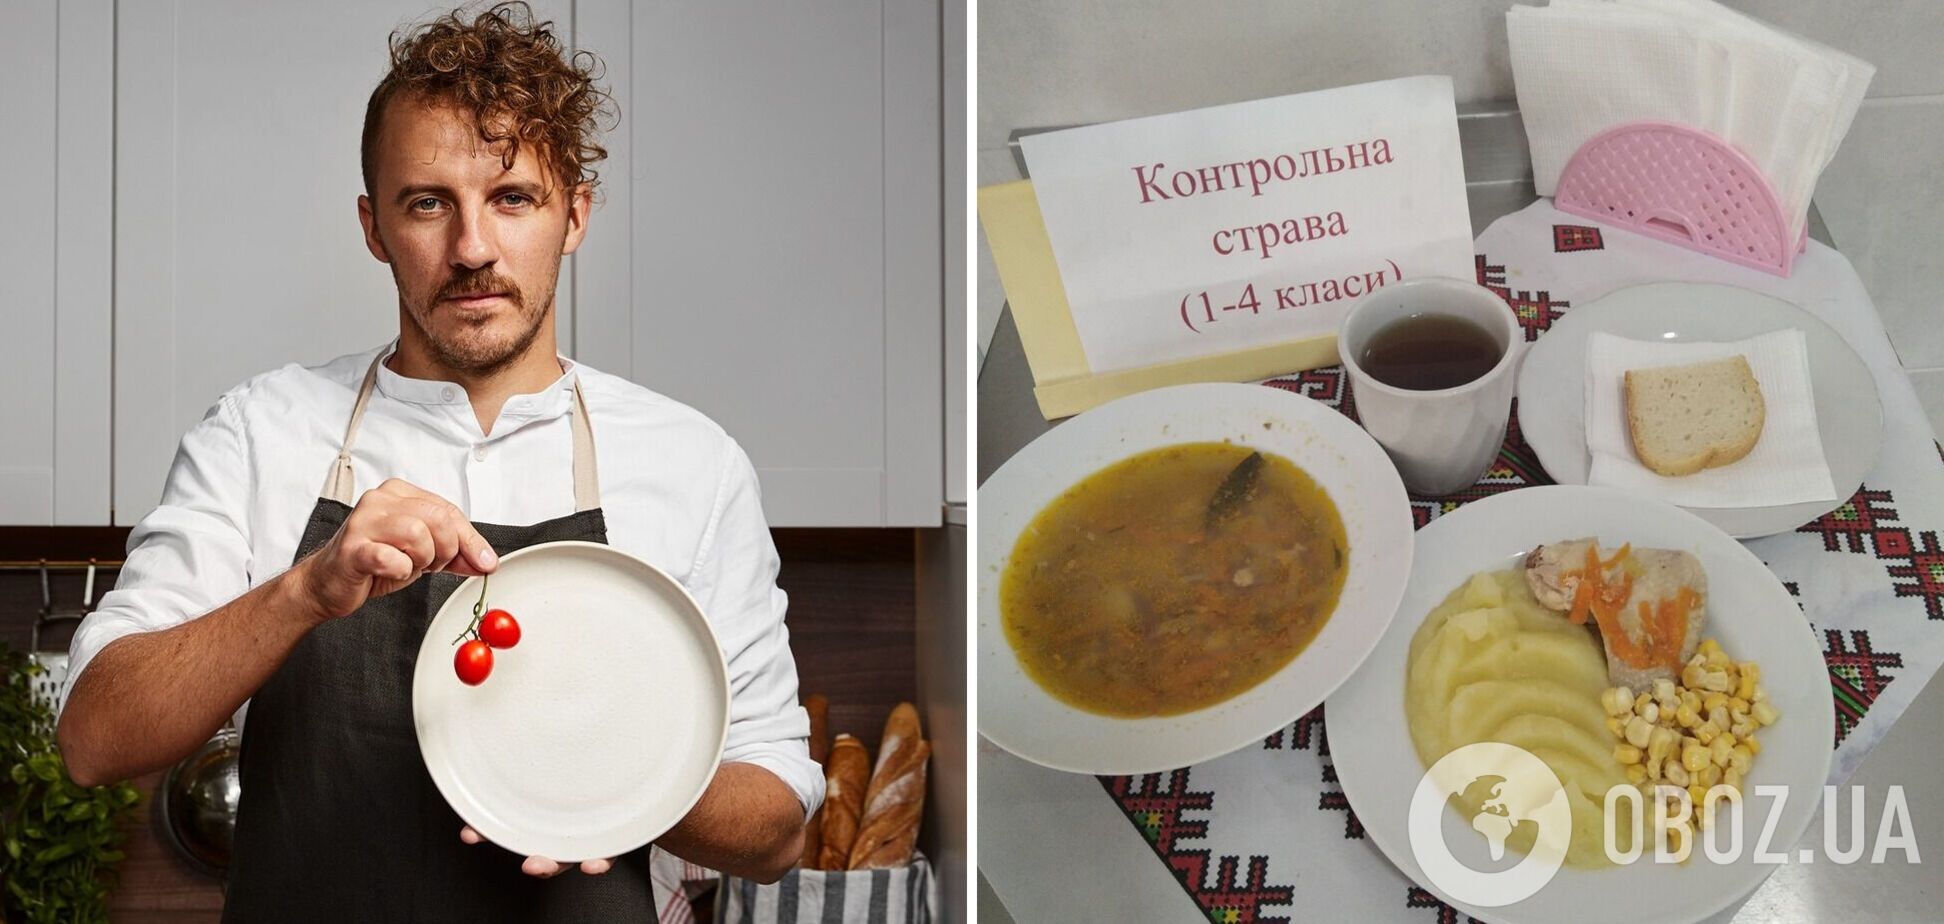 Украинцы поддержали Клопотенко после скандала из-за нового меню: школа – это не ресторан